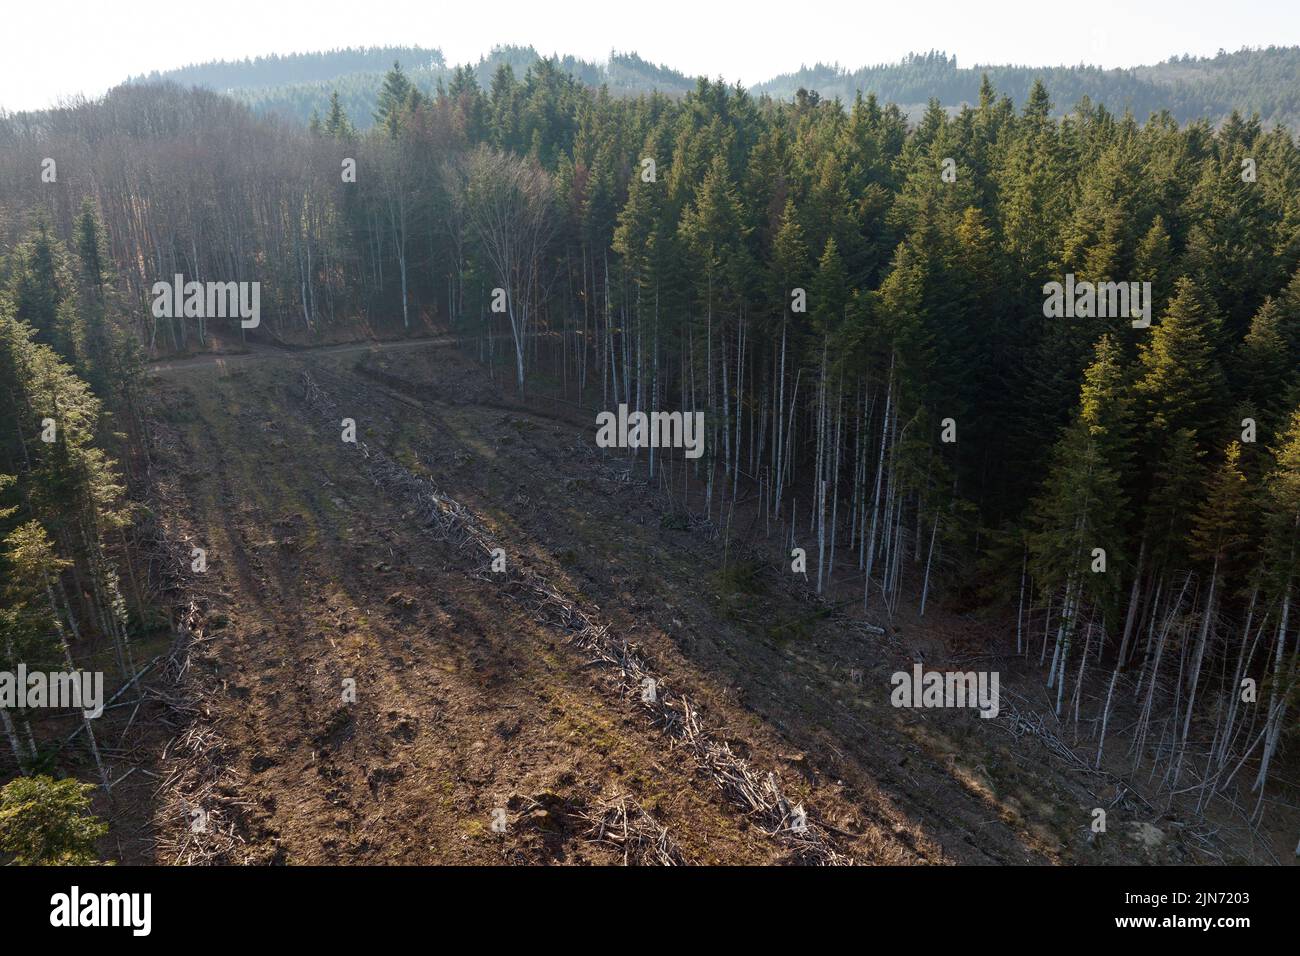 Vue aérienne de la forêt de pins avec une grande superficie d'arbres coupés à la suite de l'industrie mondiale de déboisement. Influence humaine néfaste sur l'écologie mondiale Banque D'Images